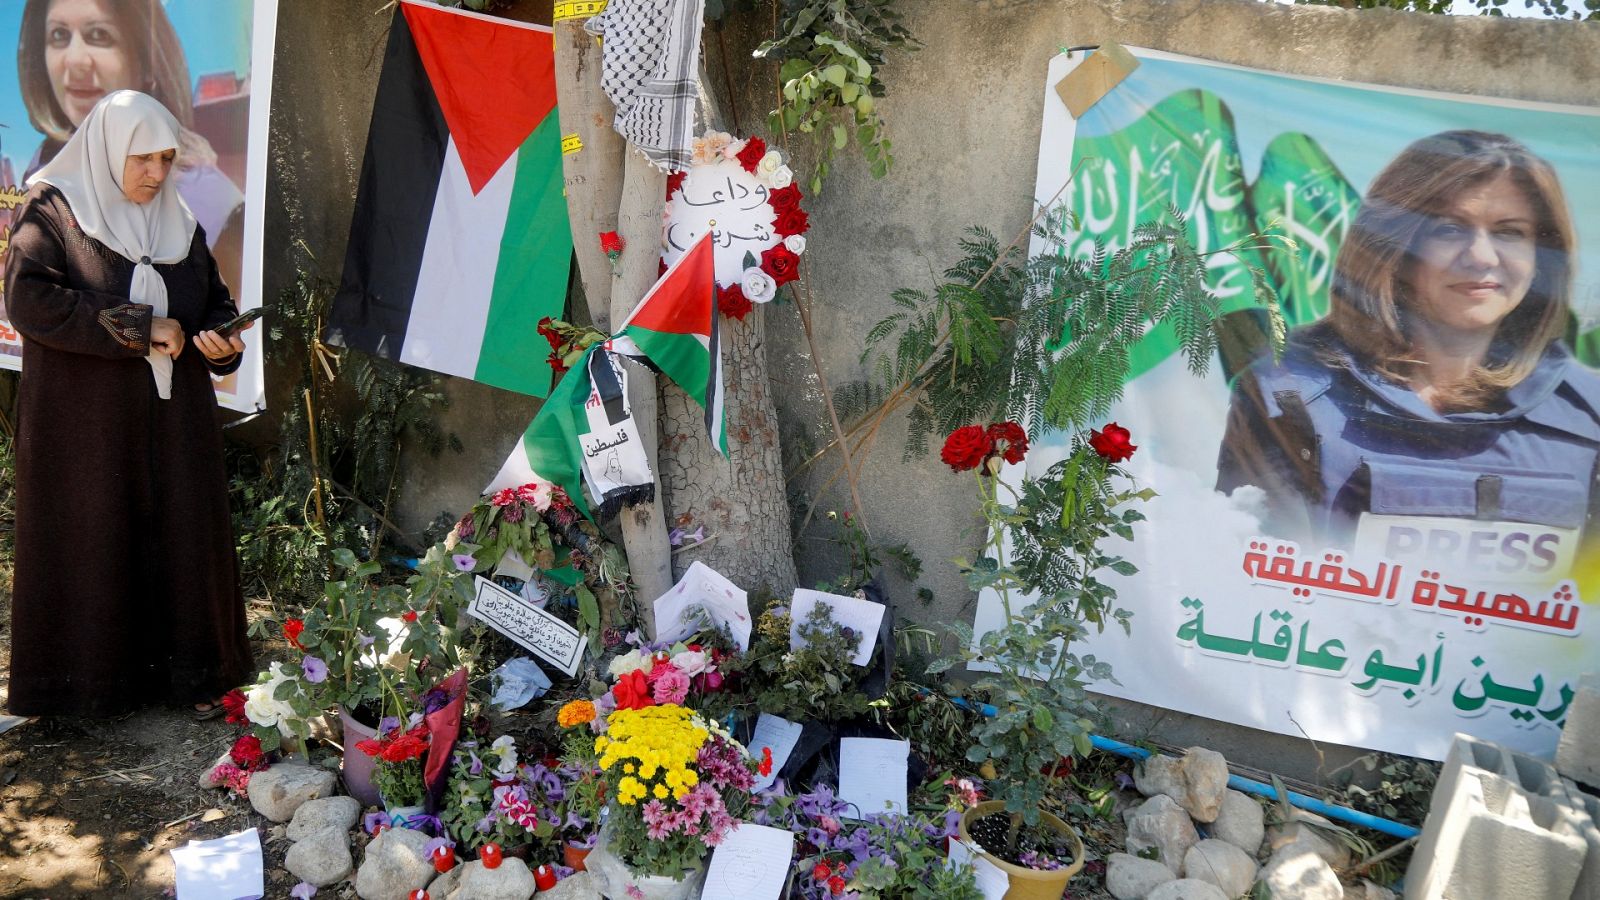 Las fuerzas israelíes "probablemente" mataron a la periodista palestina, según EE.UU